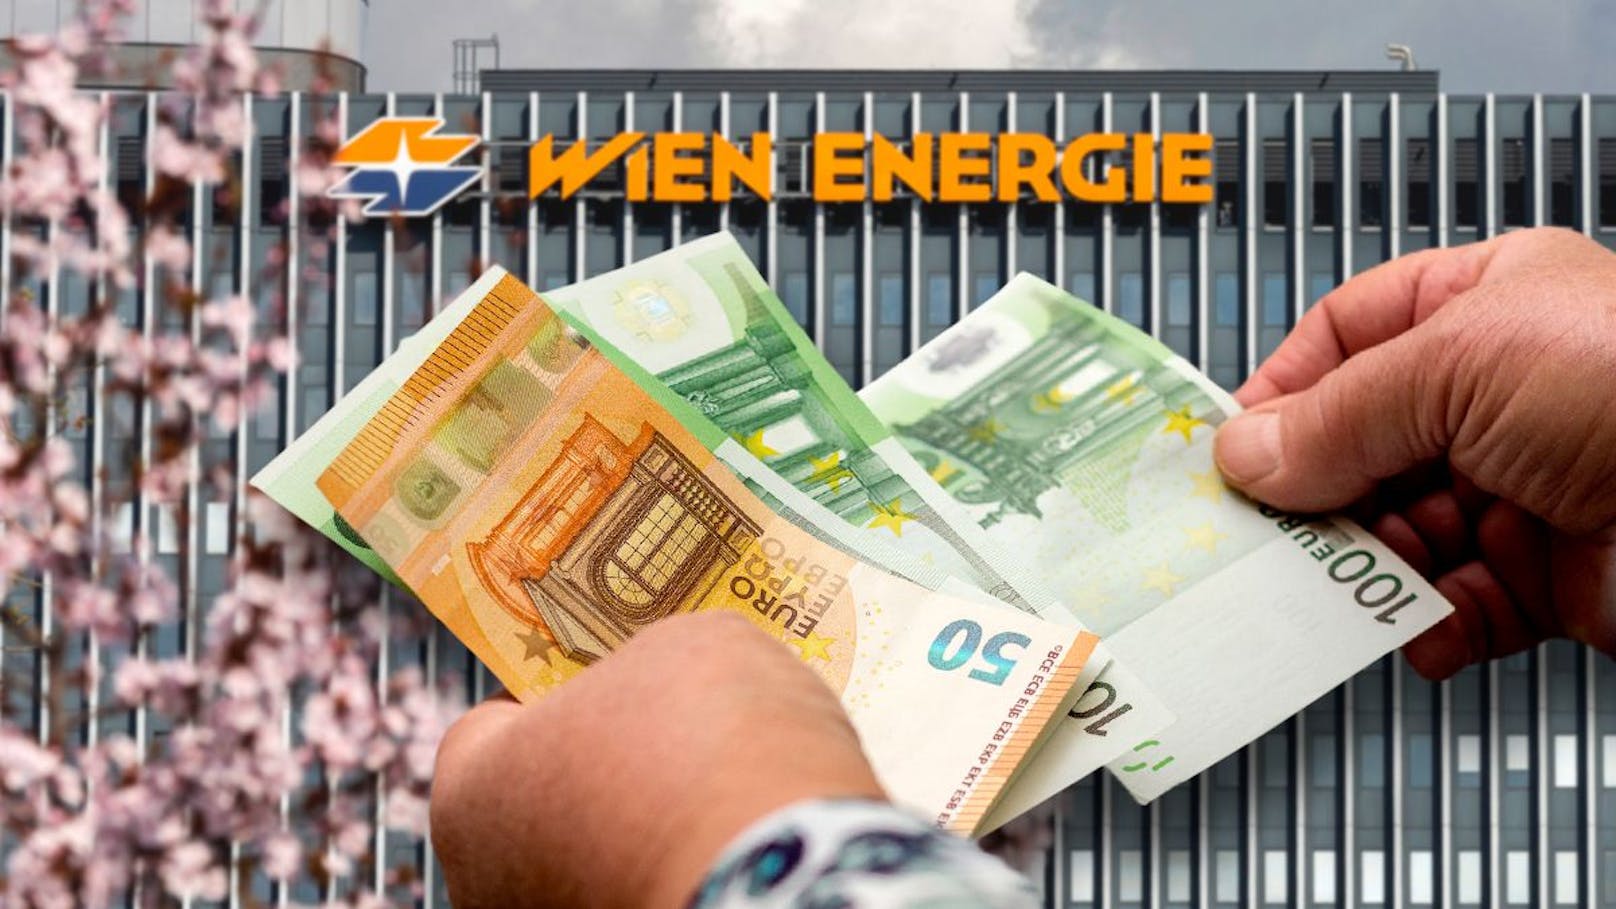 Weniger zahlen bei Wien Energie – das musst du tun